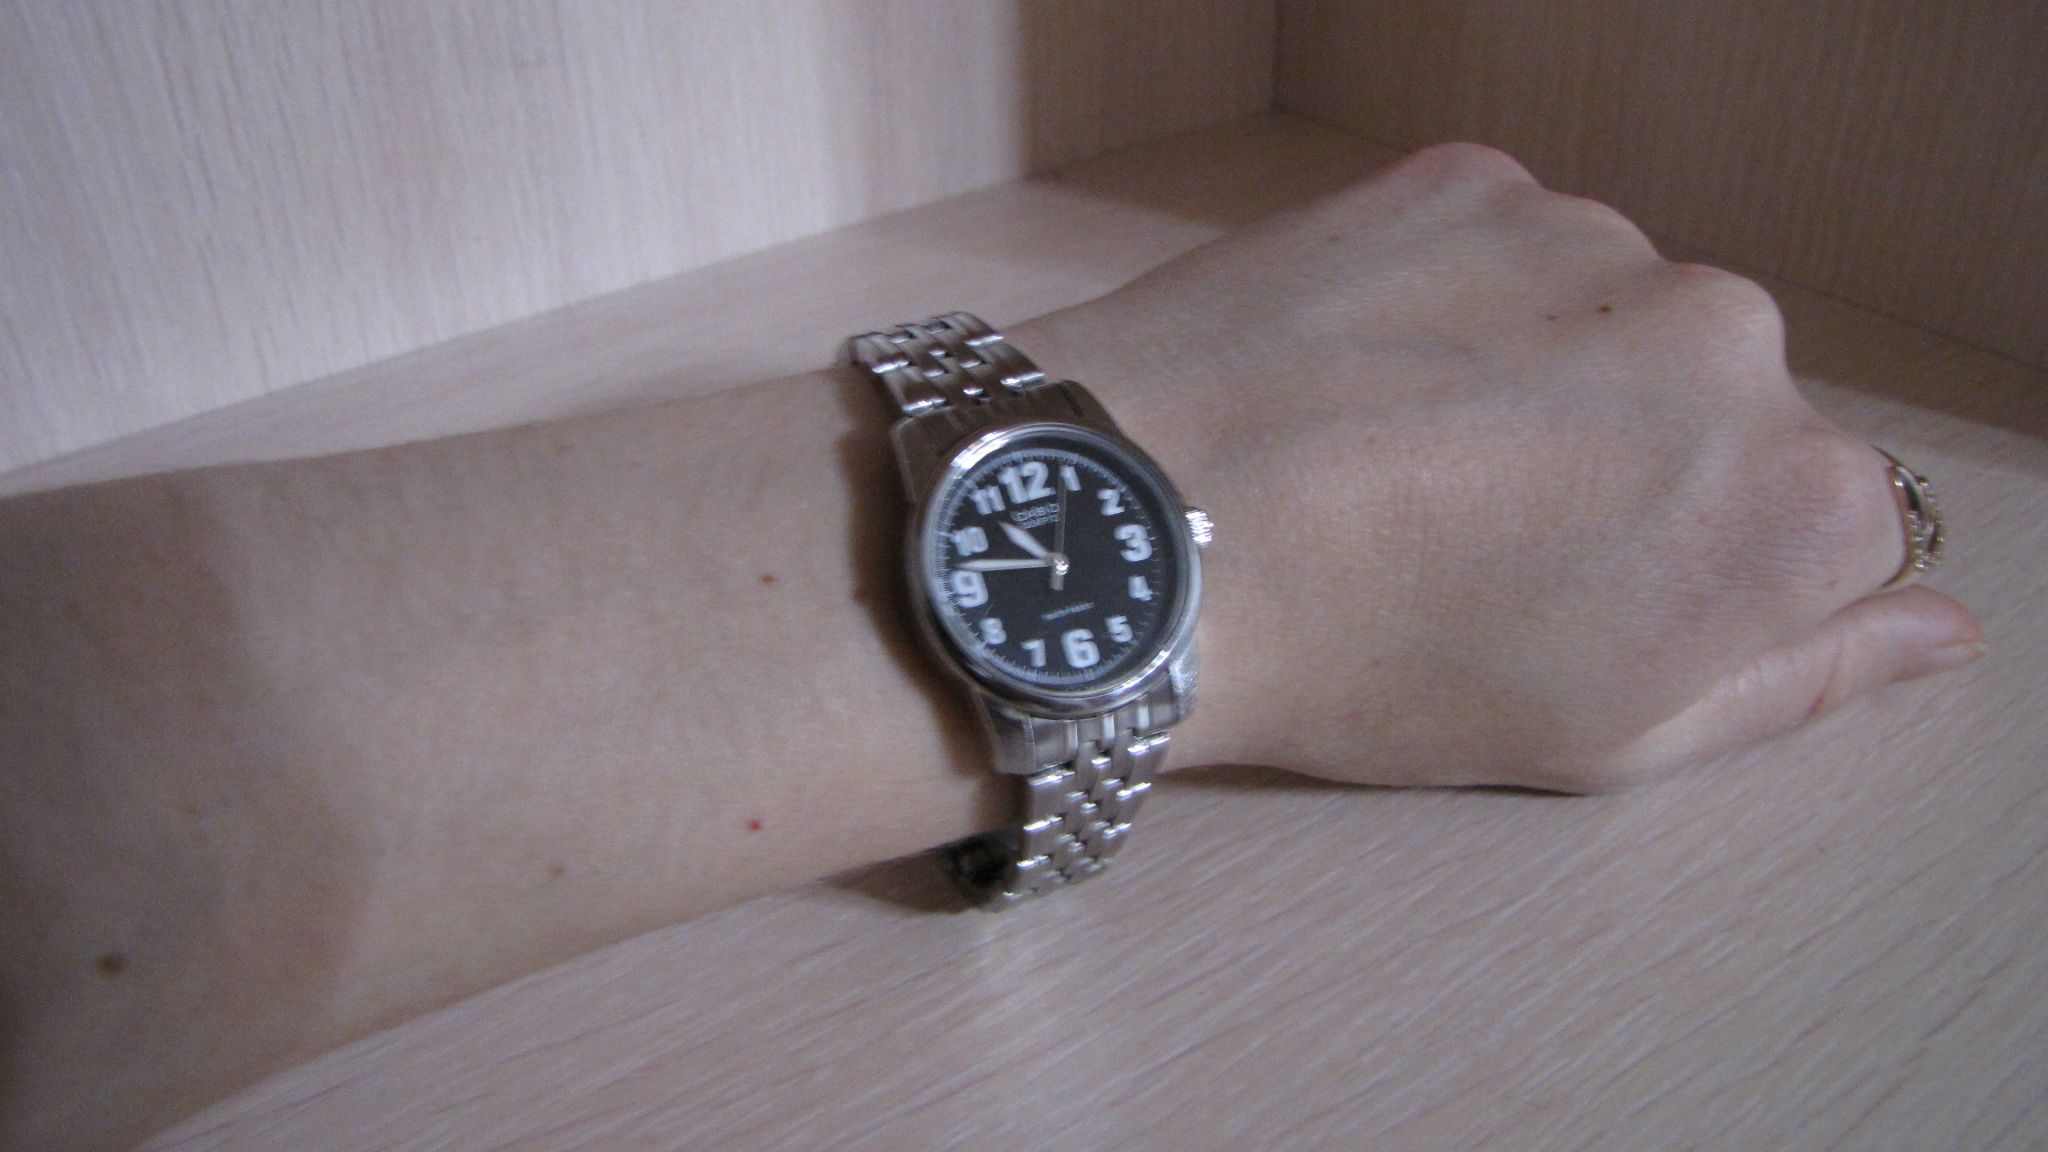 Женские часы CASIO Collection LTP-1260PD-1B